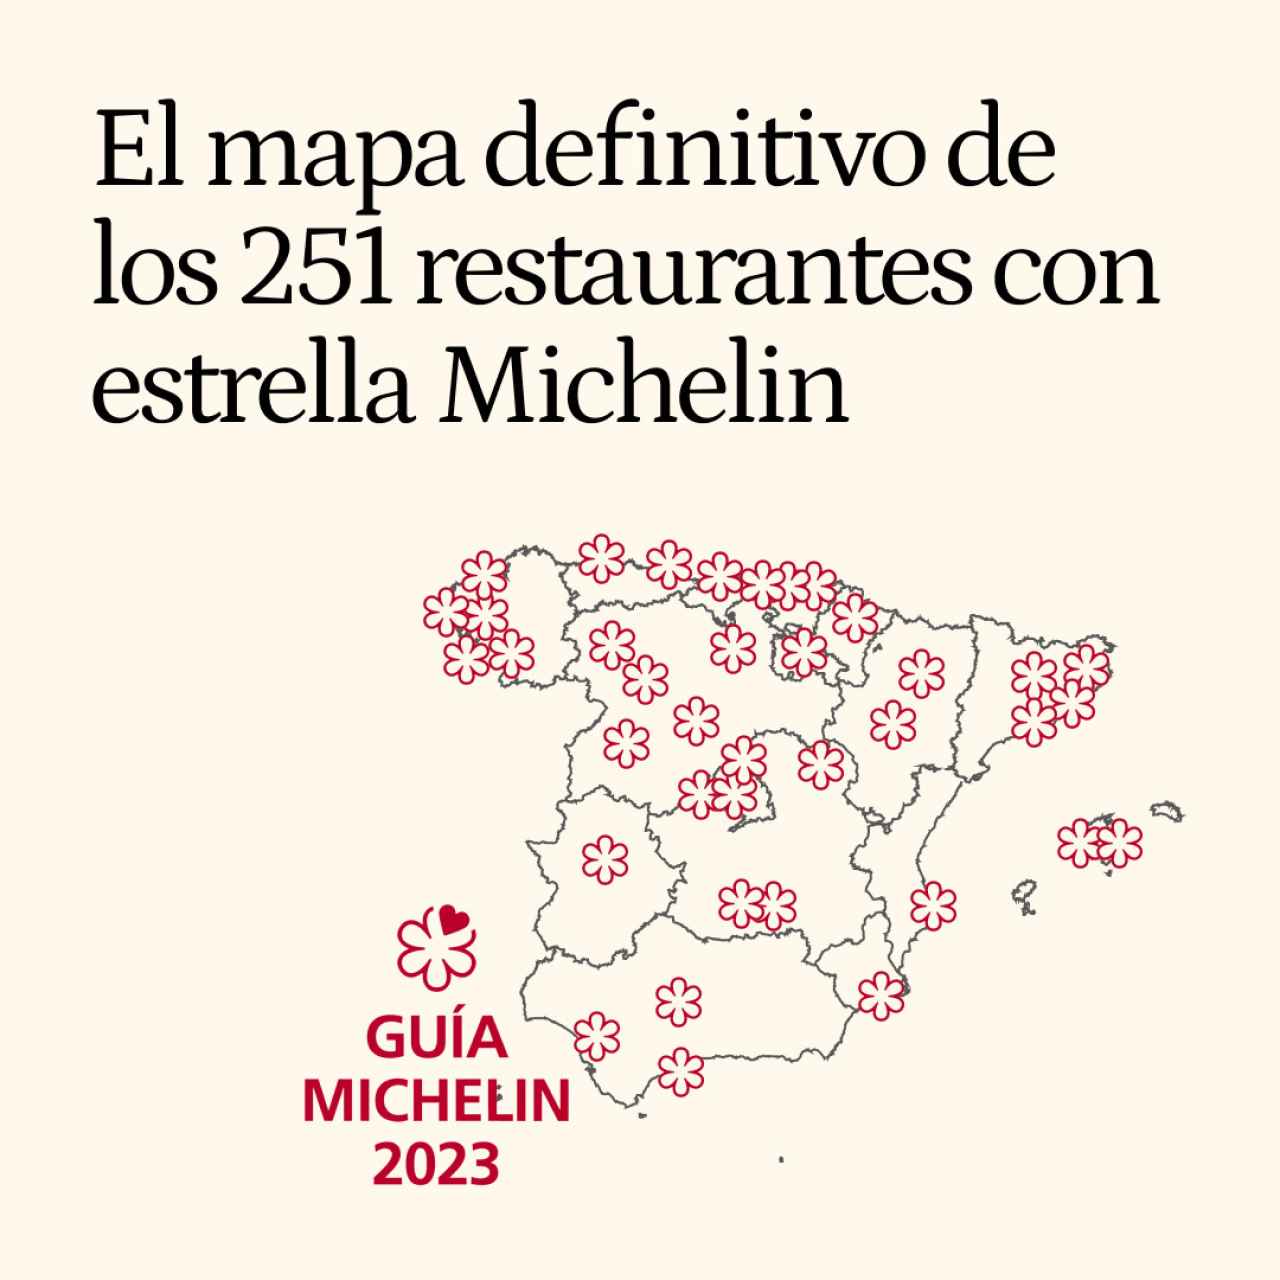 El mapa definitivo de los 251 restaurantes con estrella Michelin de España con sus precios y localizaciones